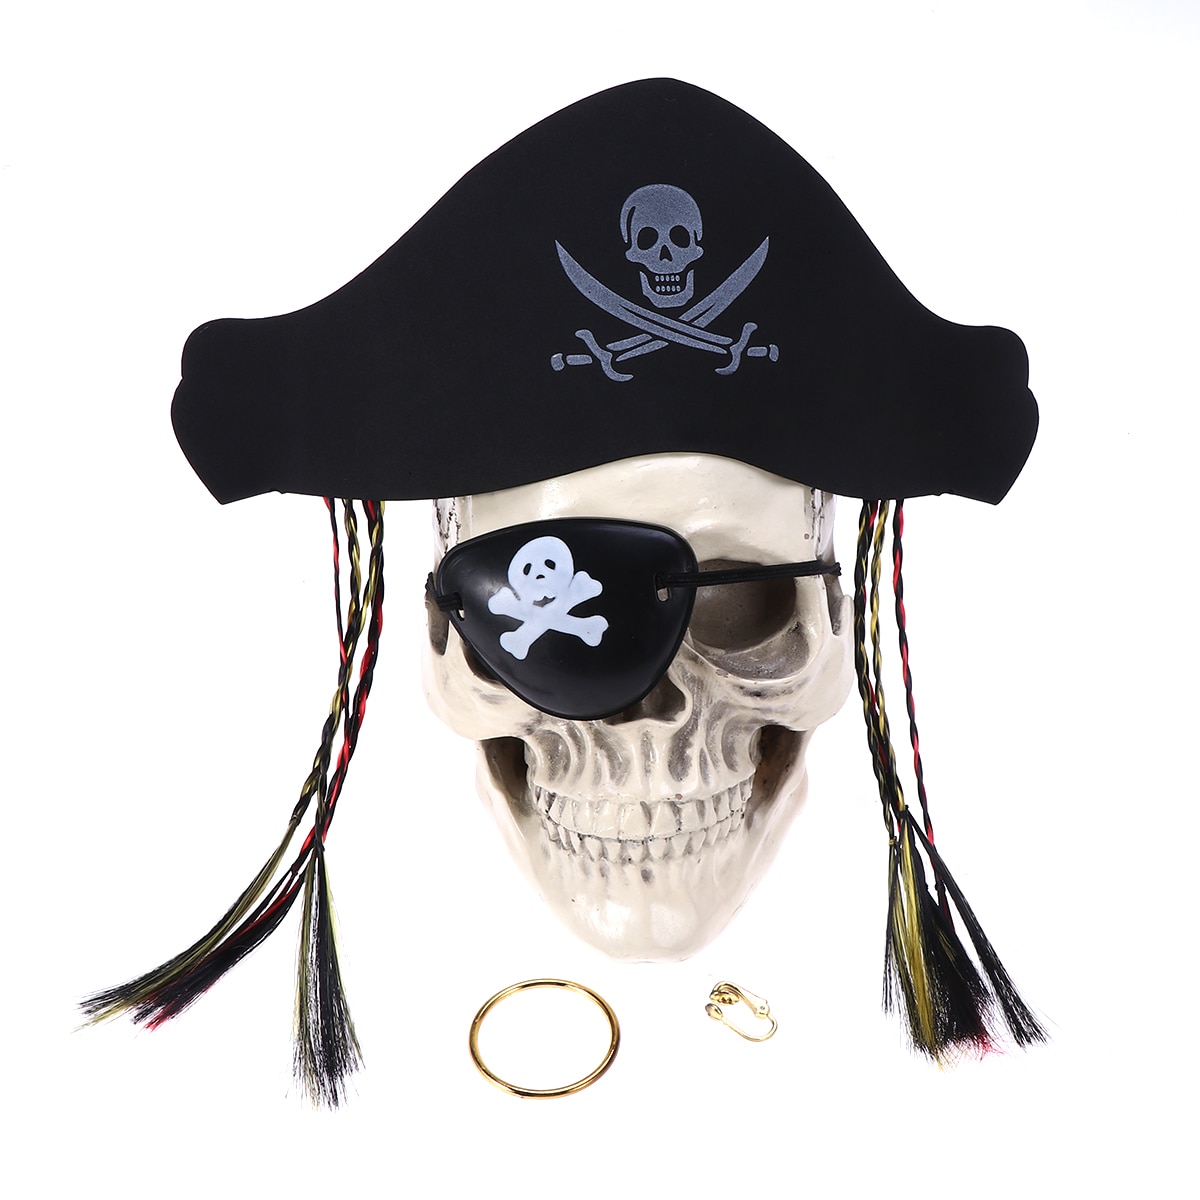 Костюмы и реквизит для пиратской вечеринки (макеты для печати)